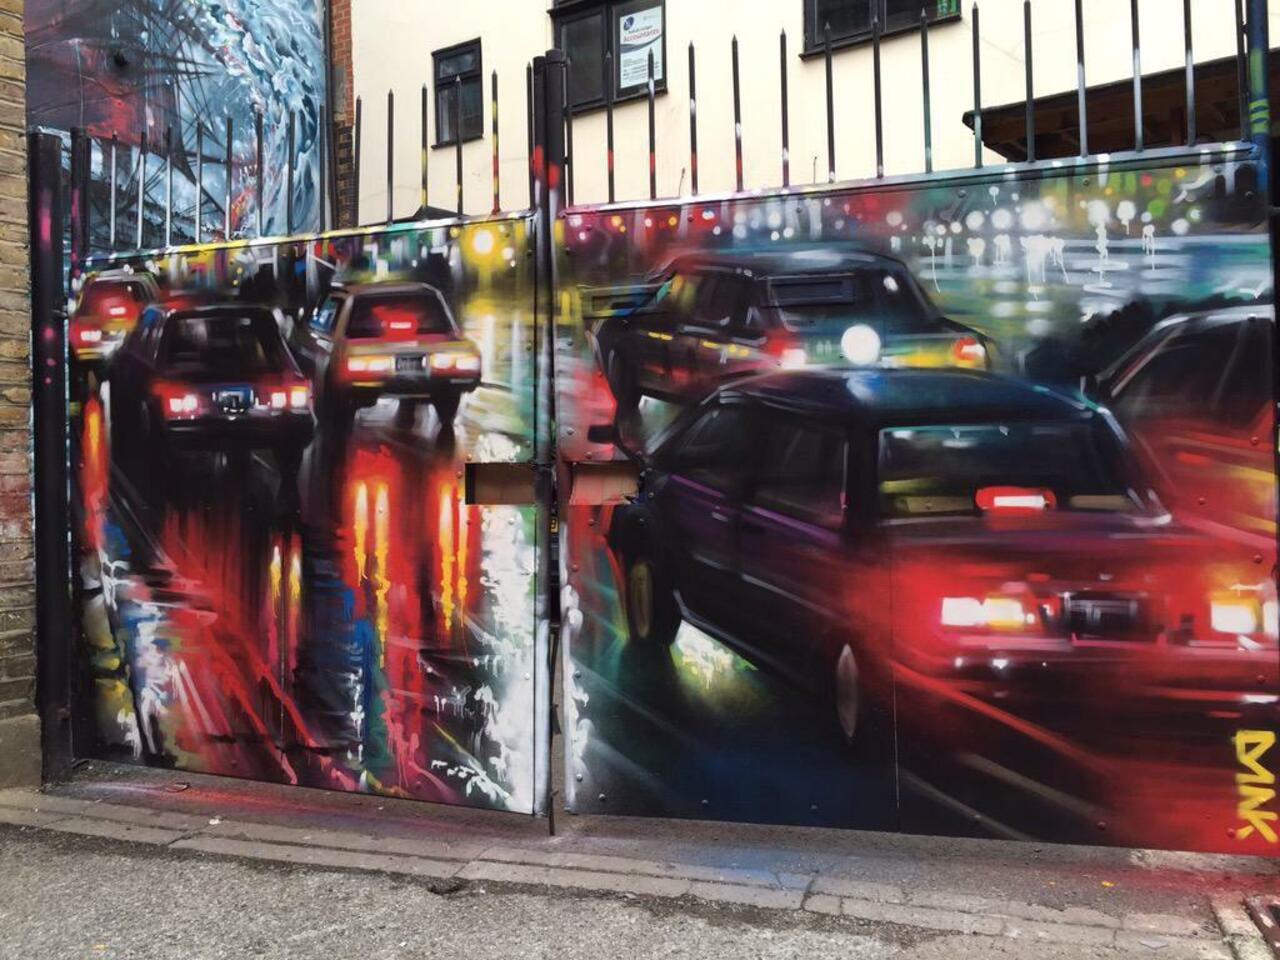 New Street Art by DanKitchener in Brick Lane London 

#art #graffiti #mural #streetart http://t.co/v5Cn2g2z2u